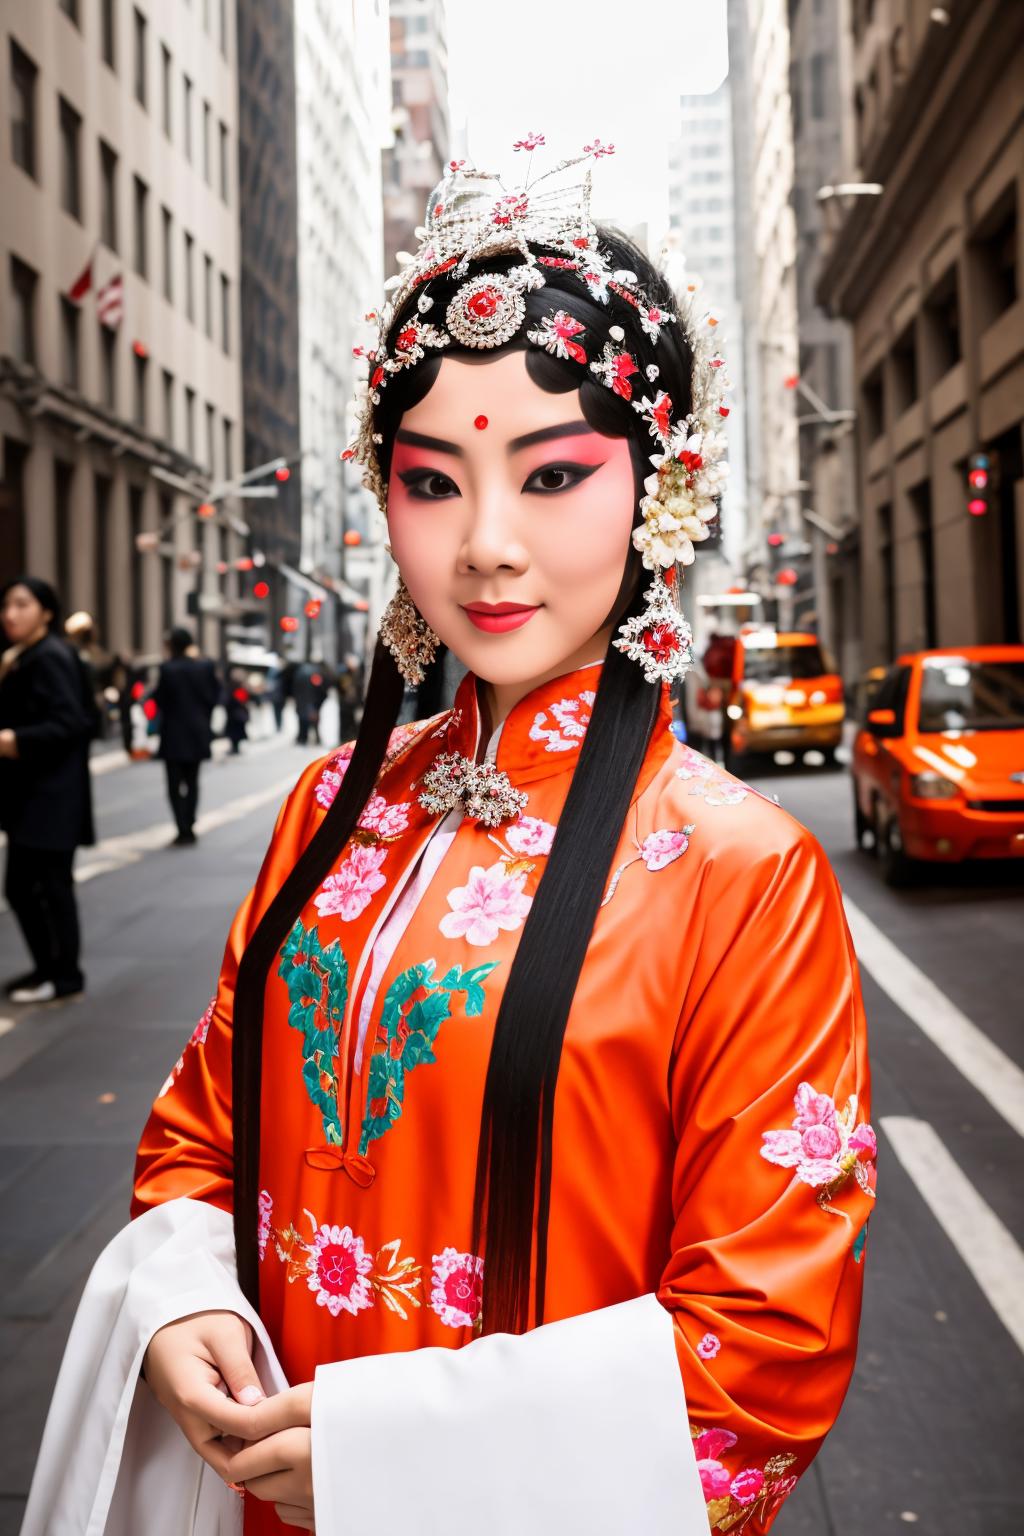 xifu 戏服(Chinese Peking Opera costumes) image by LordJia